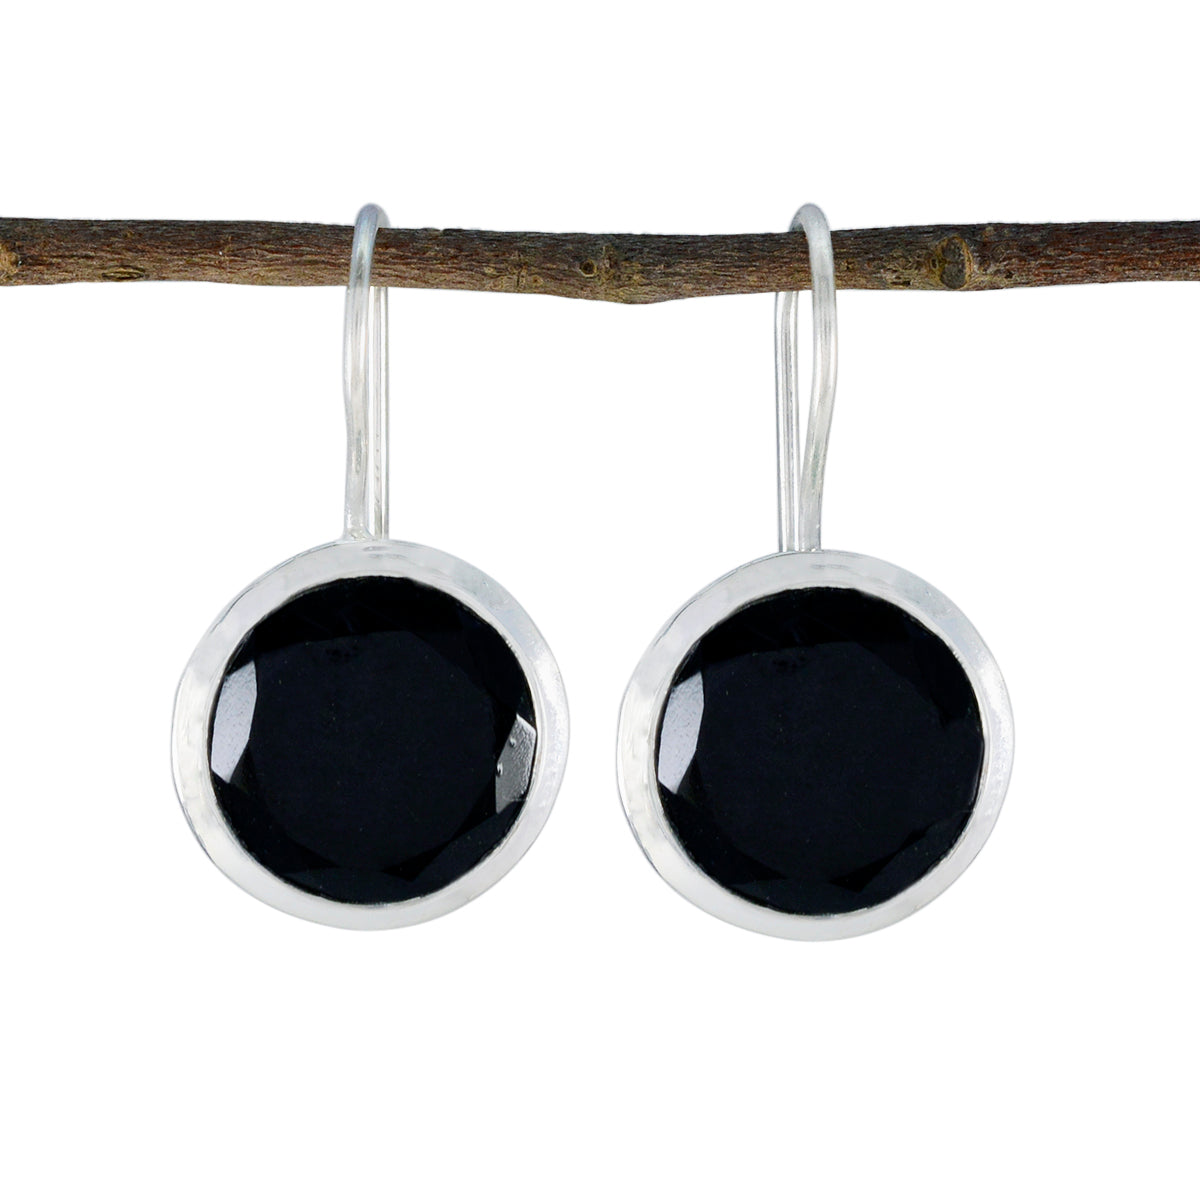 Riyo Himmlischer Sterlingsilber-Ohrring für Damen, schwarzer Onyx-Ohrring, Lünettenfassung, schwarzer Ohrring, baumelnder Ohrring